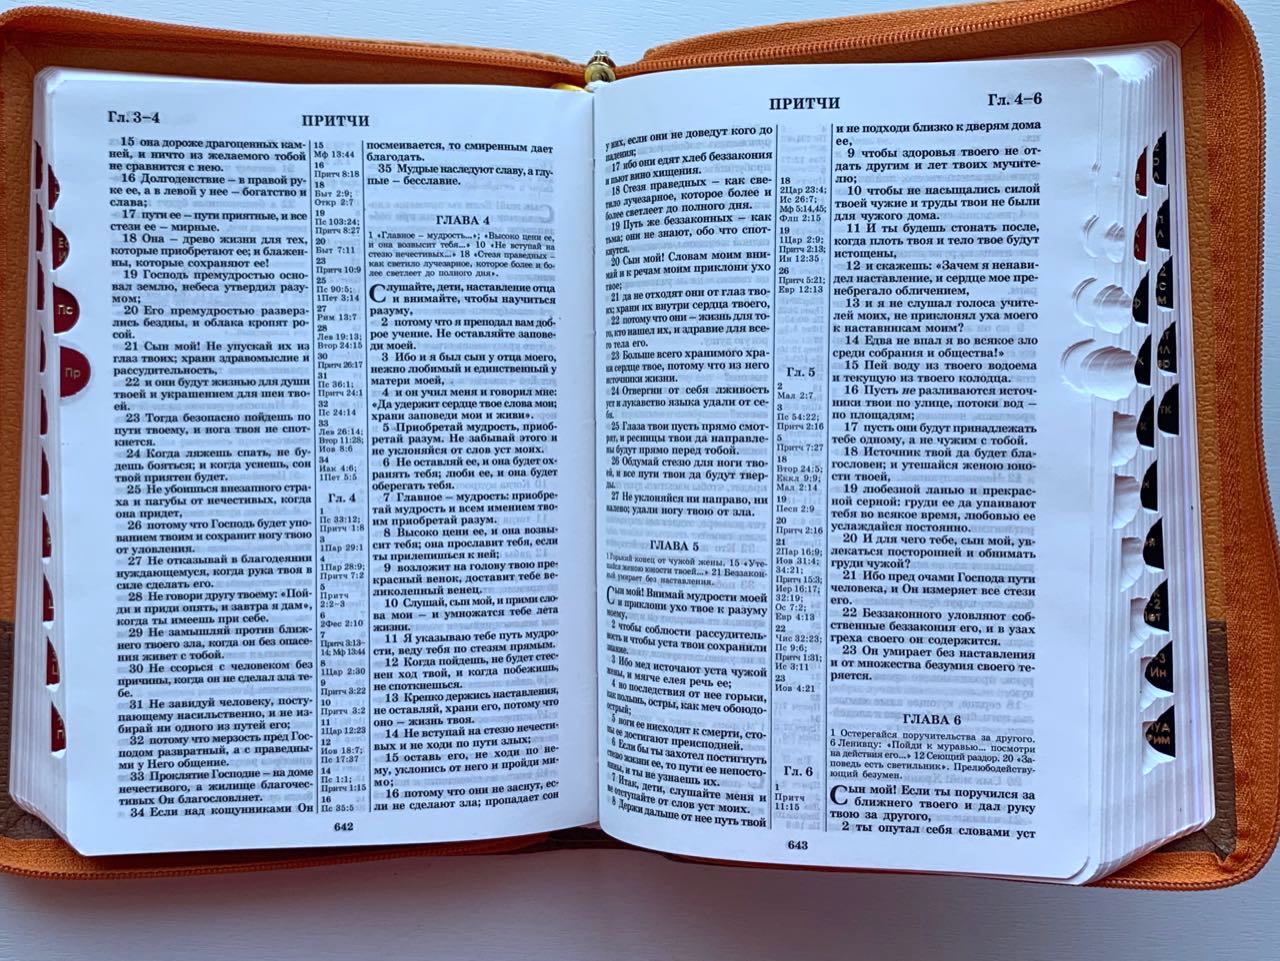 БИБЛИЯ 077DTzti формат, переплет из искусственной кожи на молнии с индексами, надпись золотом "Библия", цвет светло-коричневый/синий, большой формат, 180*260 мм, цветные карты, крупный шрифт